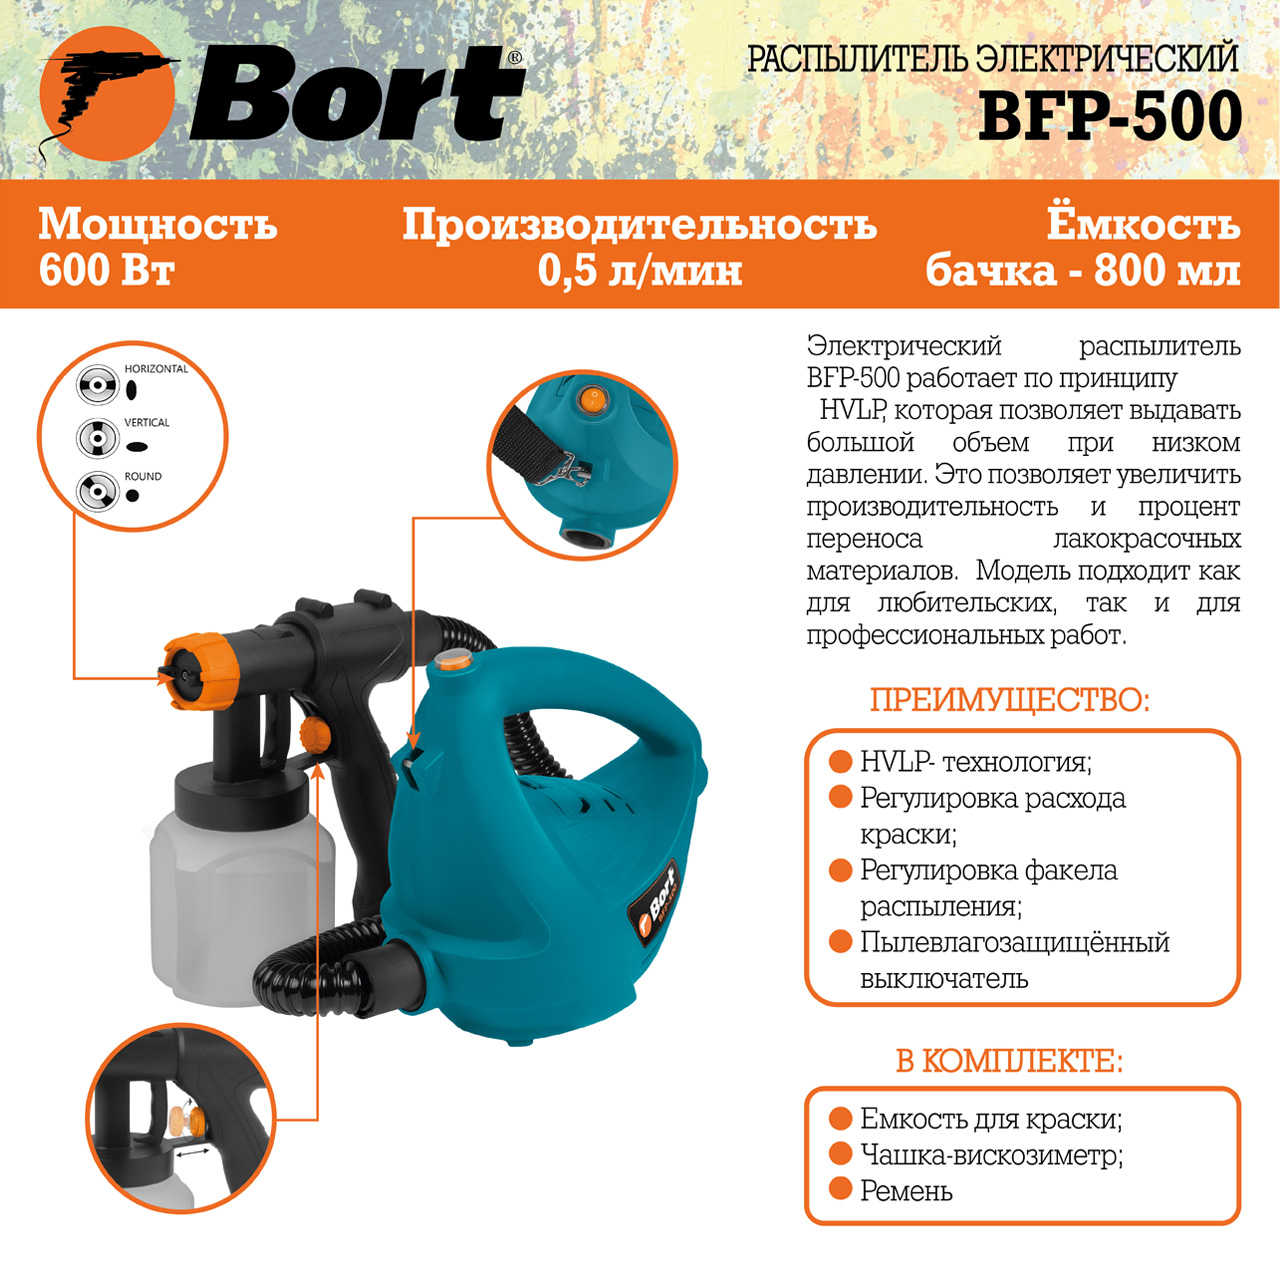 Распылитель электрический BORT BFP-500